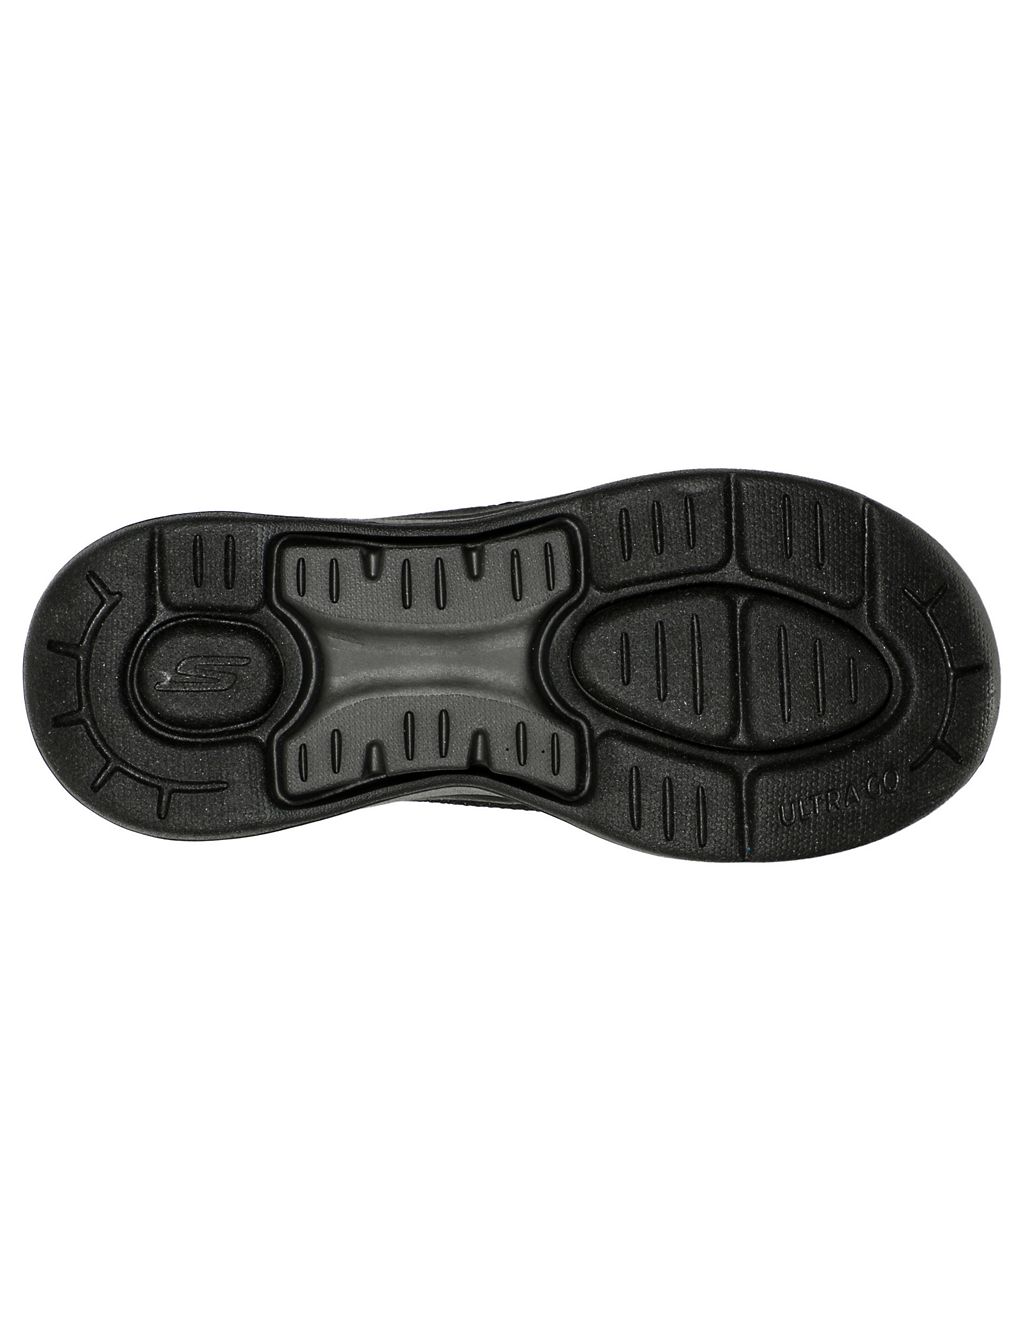 GOwalk Arch Fit Sandal Luminous Flip Flops | Skechers | M&S